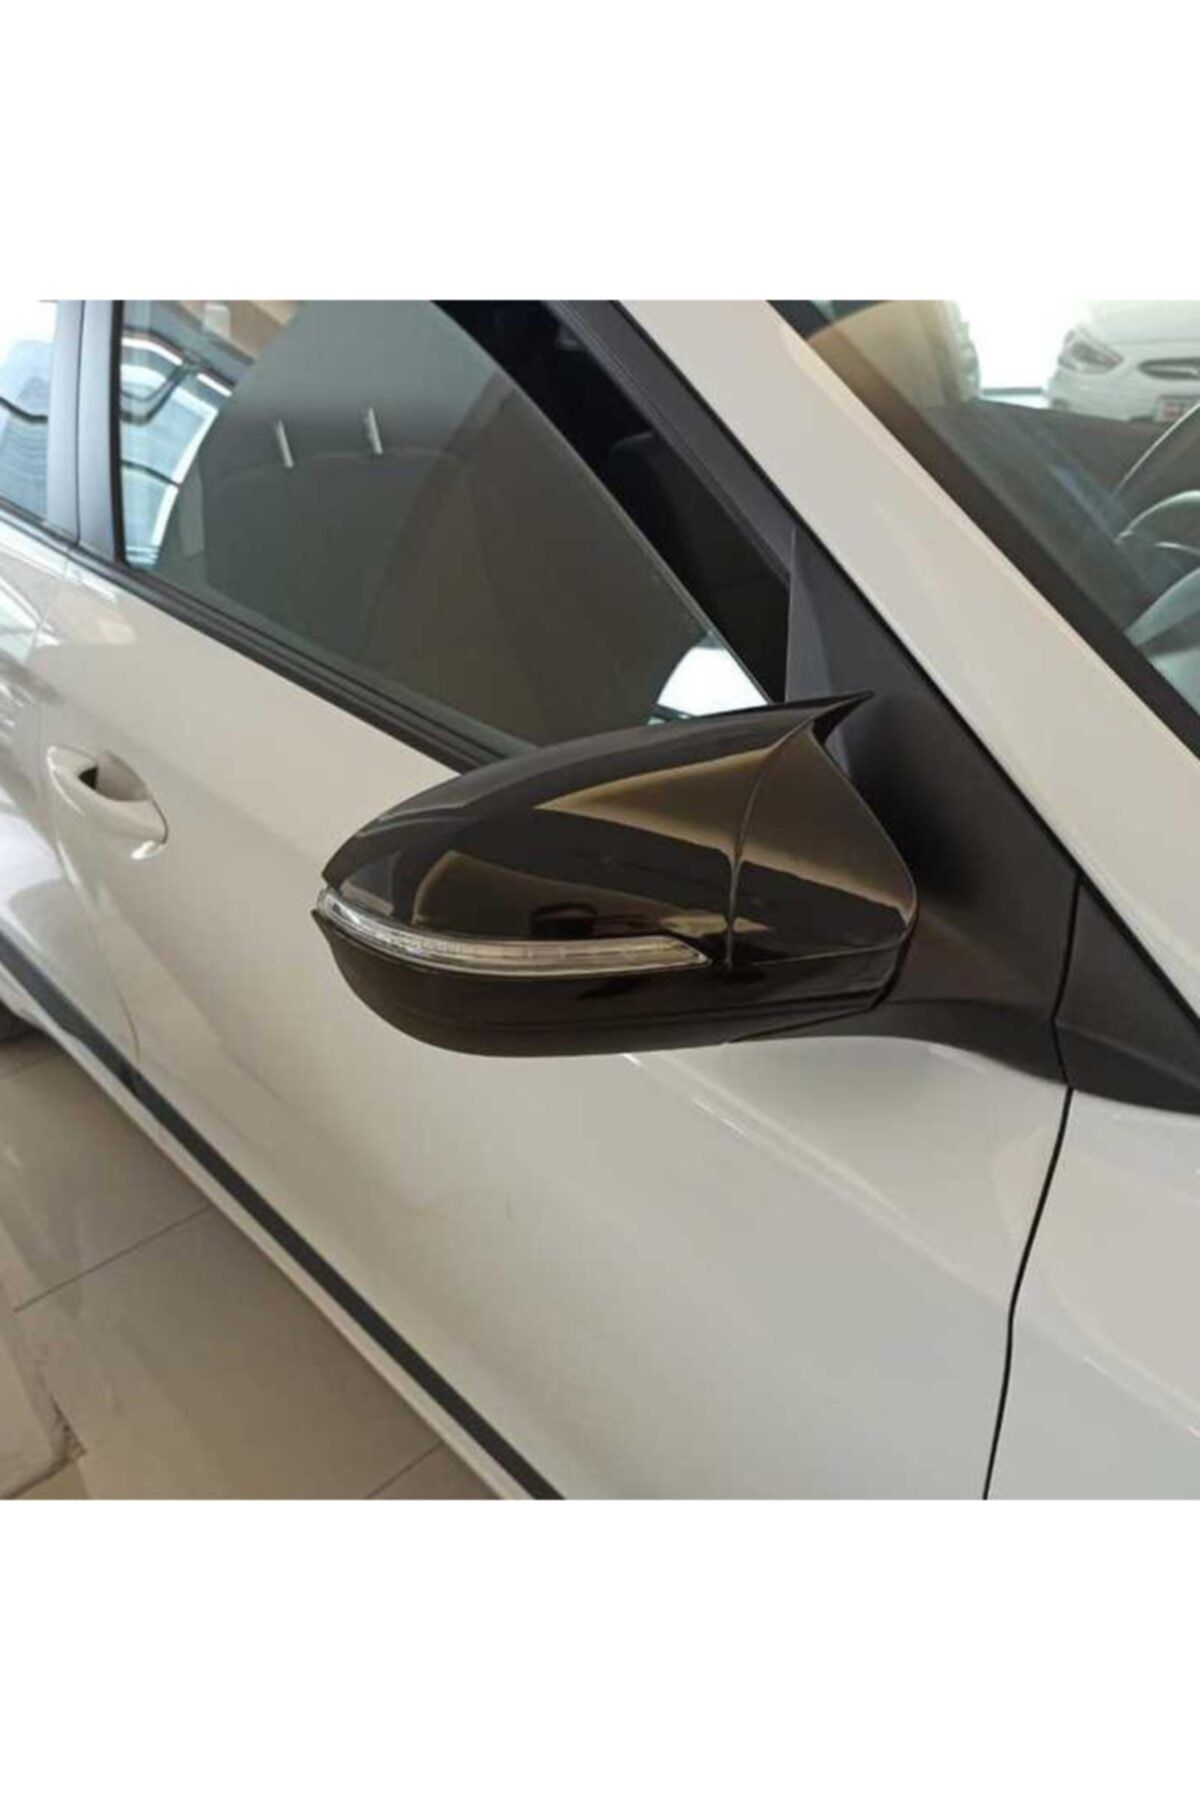 OLED GARAJ Hyundai i20 İçin Uyumlu  Batman Ayna Kapağı Sinyalli Modeller için 2014-2019